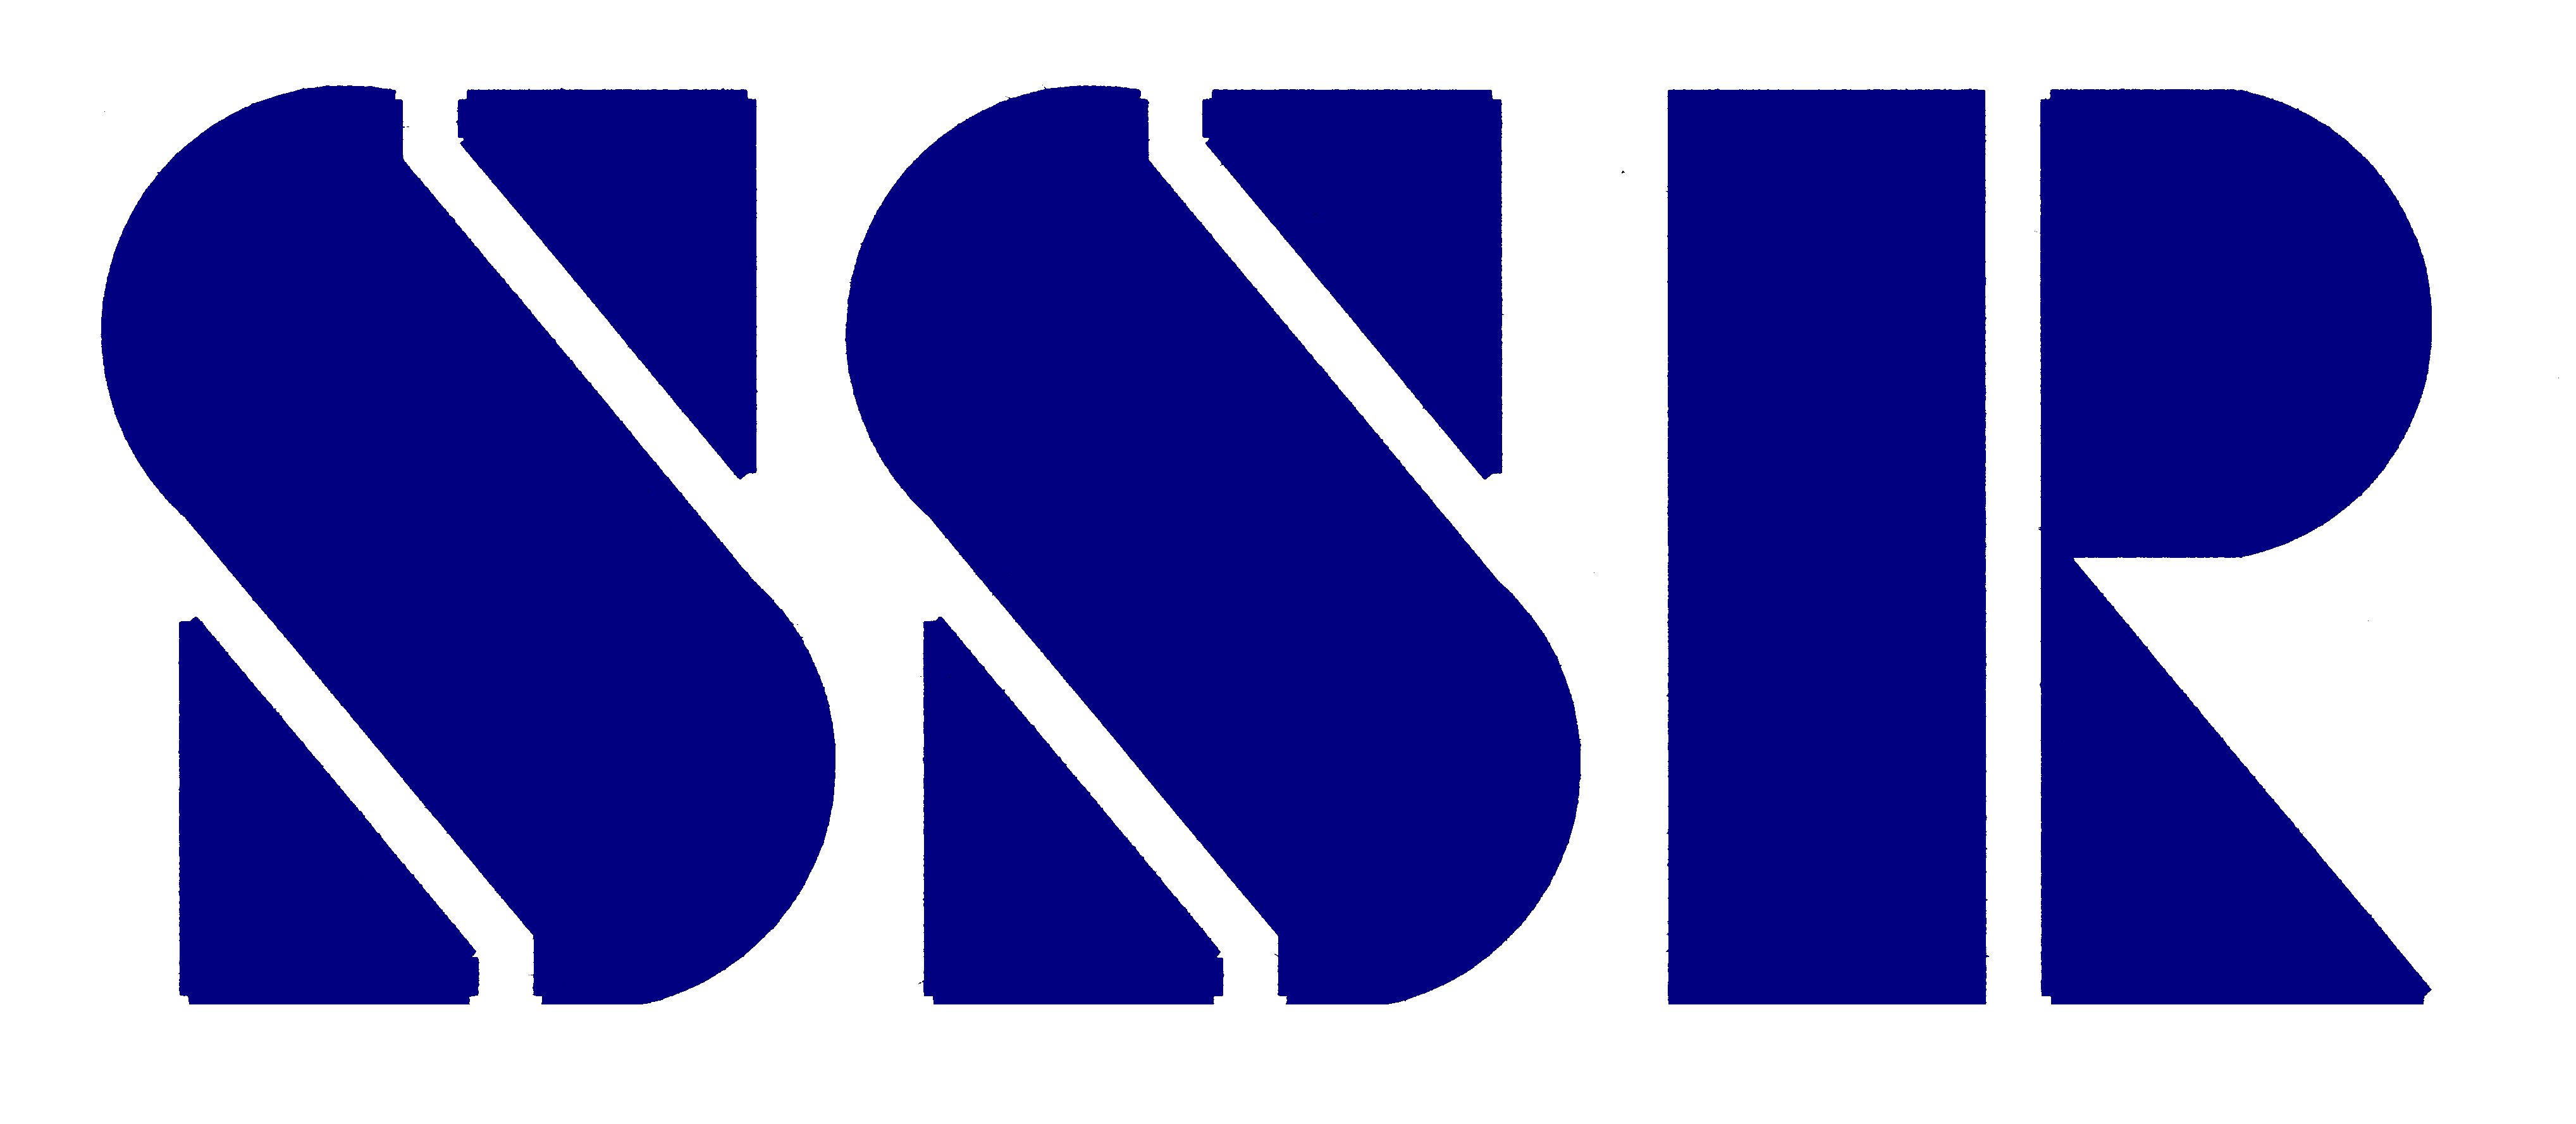 株式会社芹沢システムリサーチのロゴです。